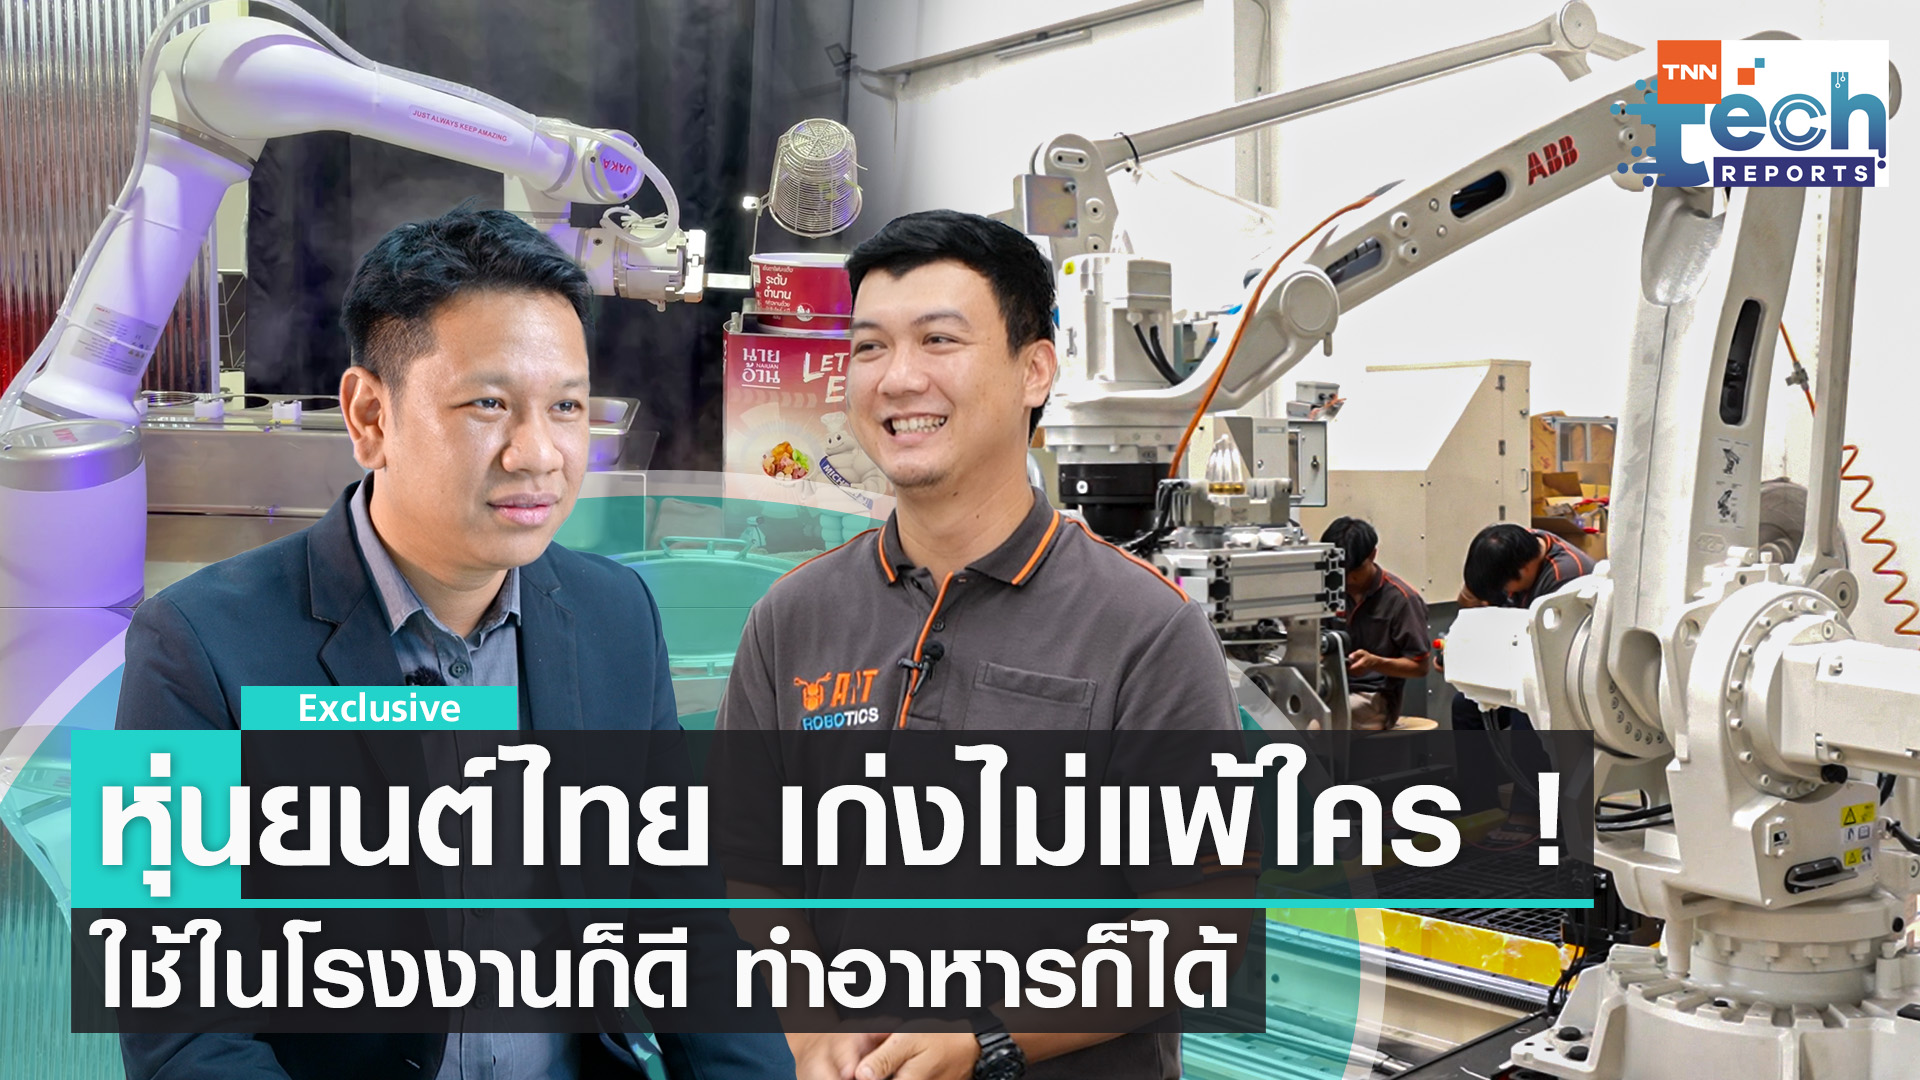 เจาะเบื้องหลังเทคโนโลยีหุ่นยนต์ฝีมือคนไทย | TNN Tech Reports